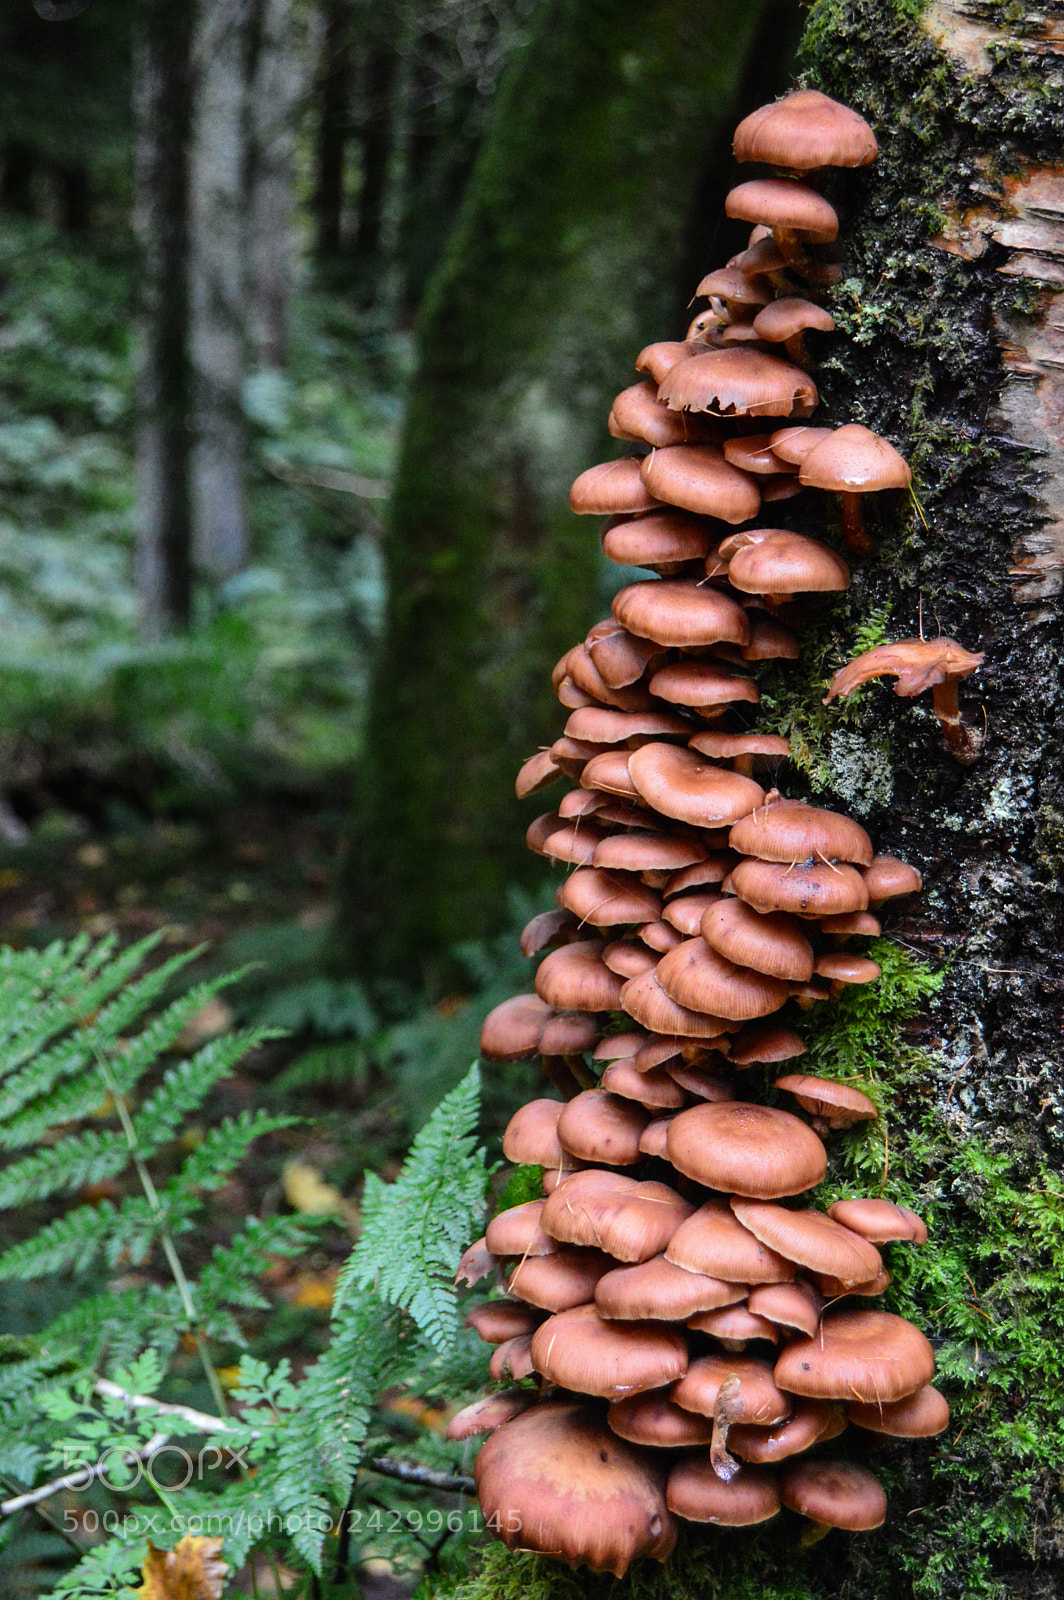 Nikon D3200 sample photo. Climbing mushrooms photography